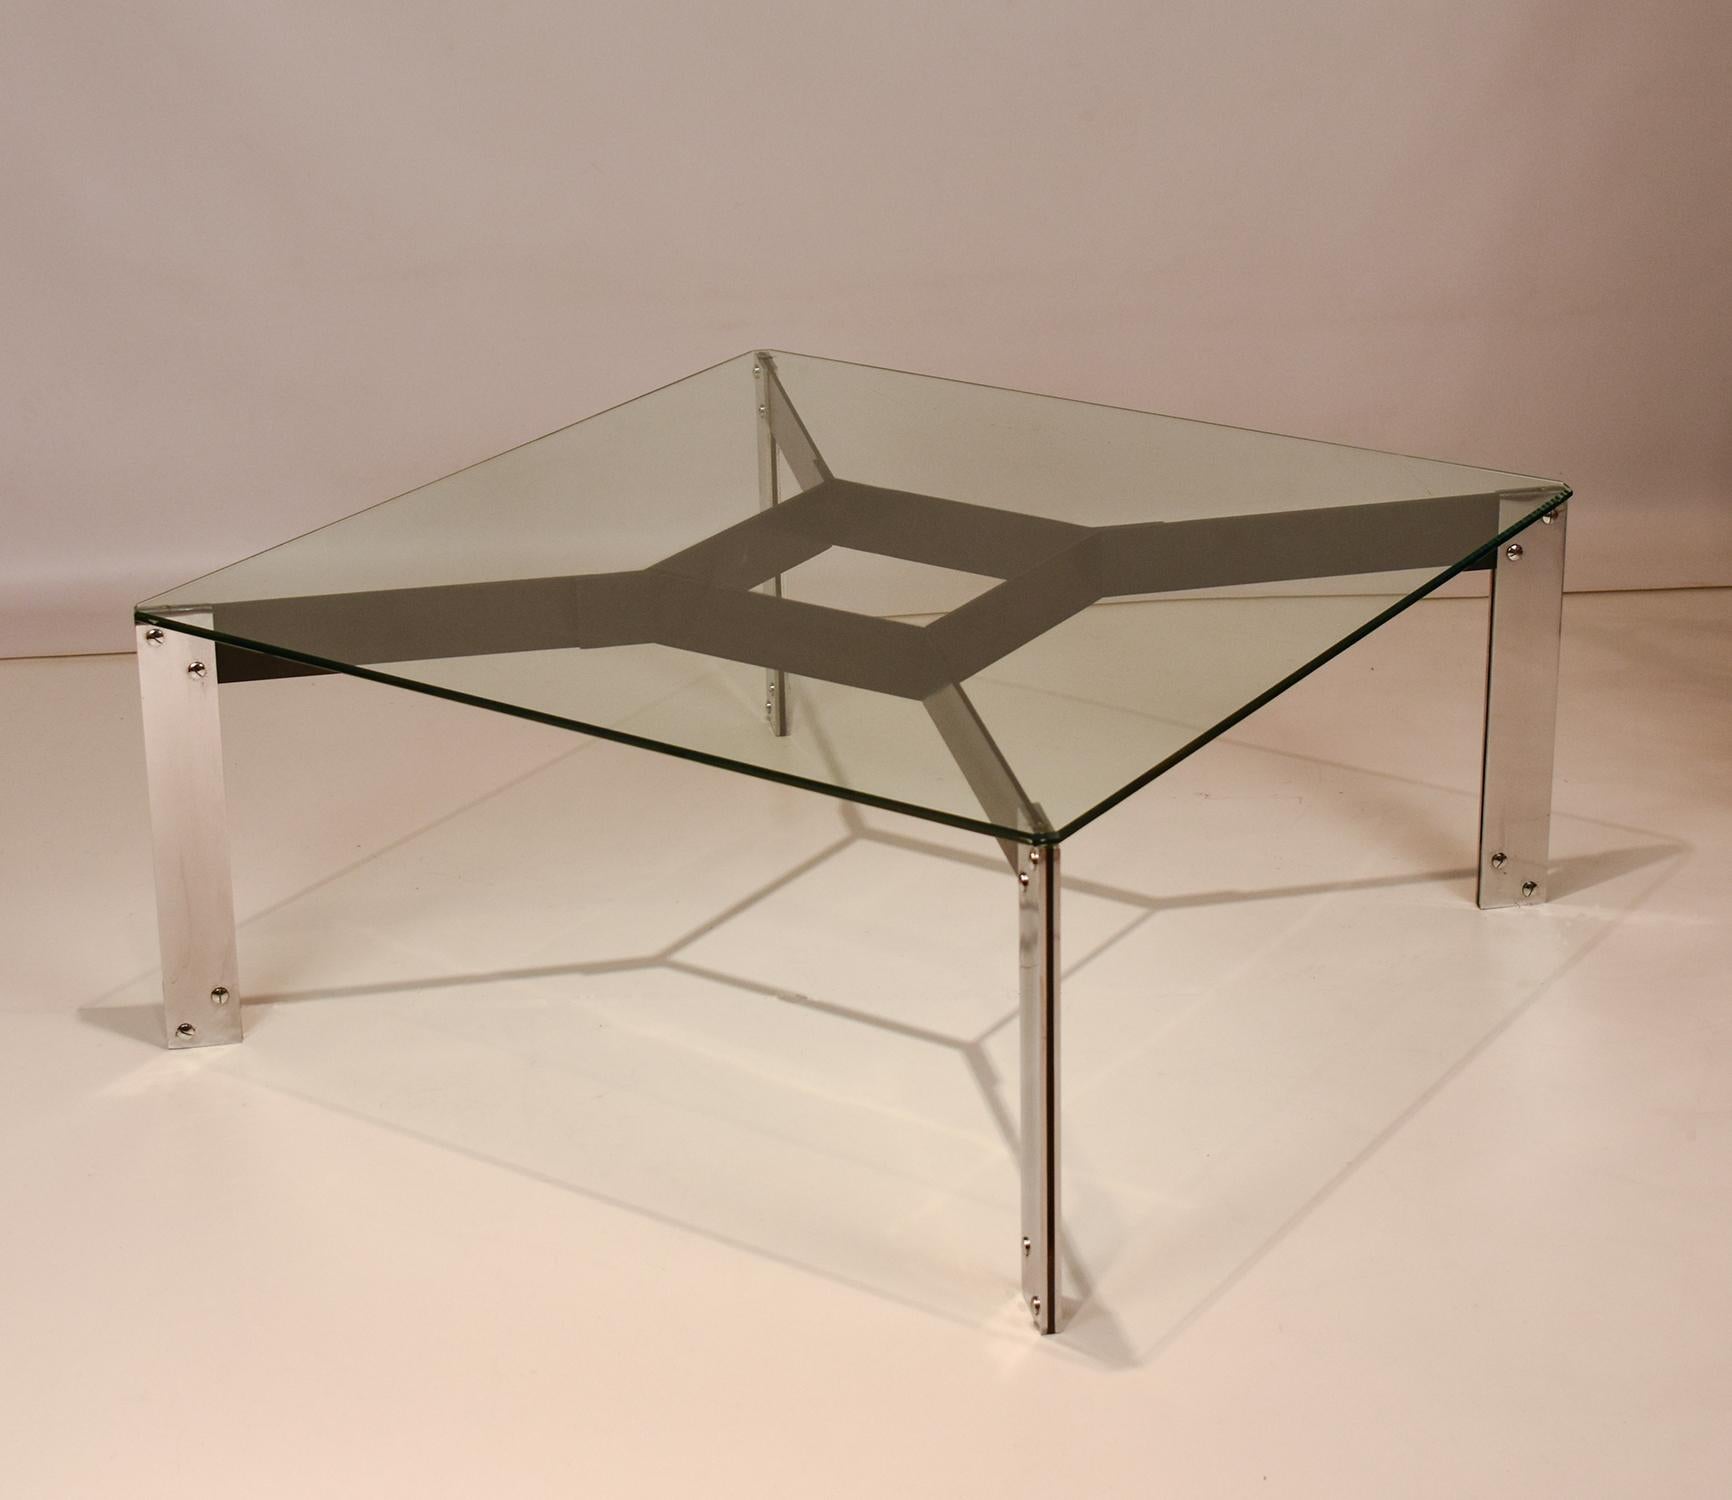 L'un des premiers meubles conçus par Miguel Milá et édités par Gres en 1962.

Le plateau rectangulaire en verre trempé et vissé repose sur une structure métallique composée de quatre pieds en plaques de fer chromé fixés à un fin cadre en fer